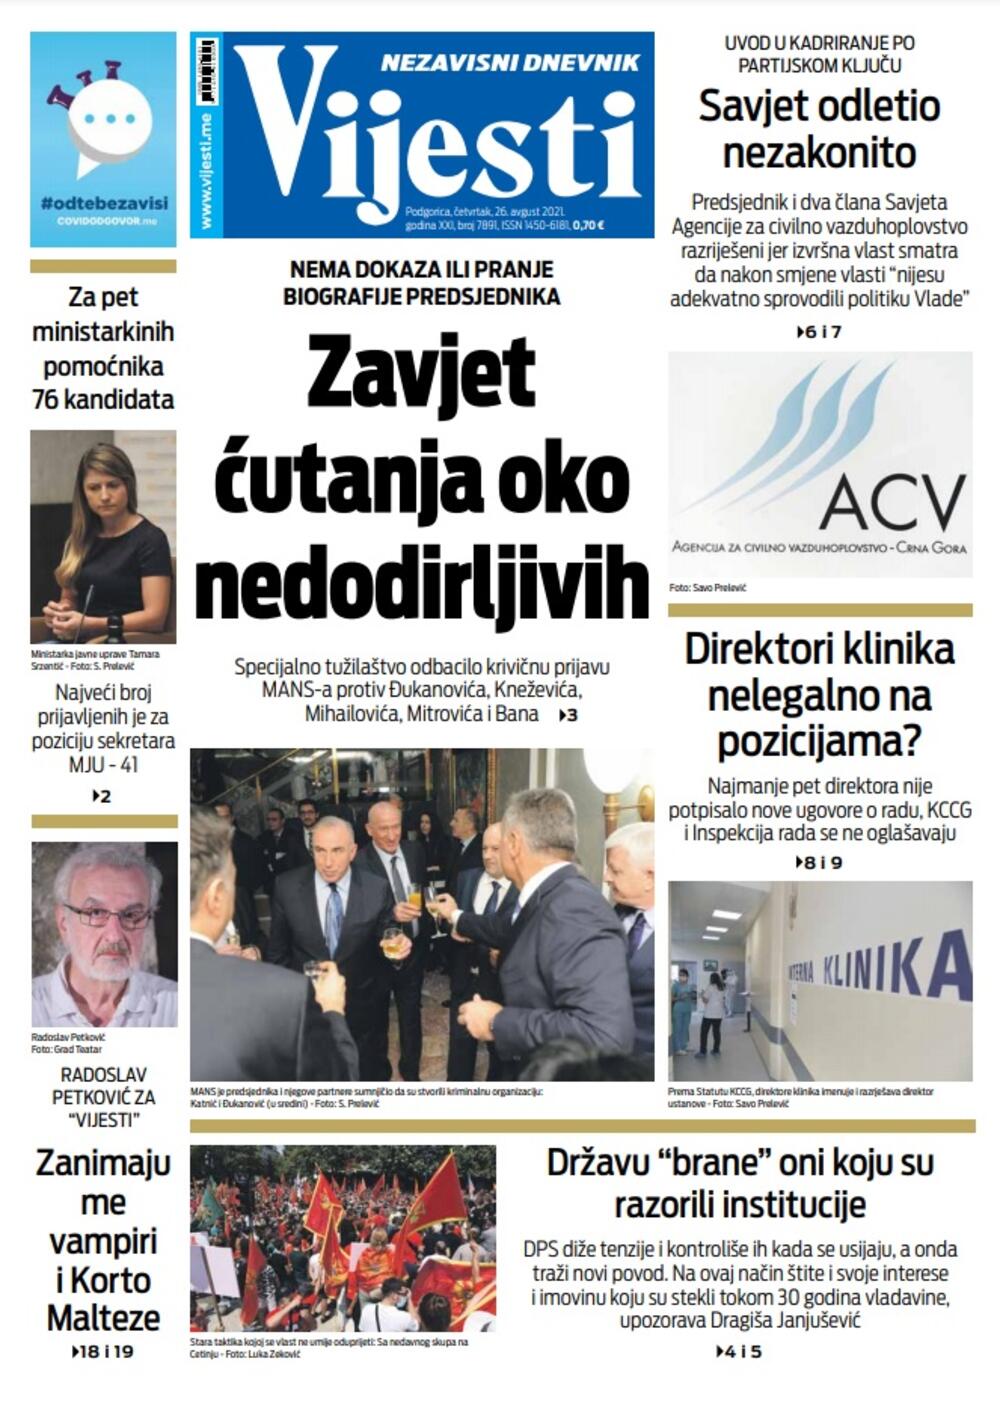 Naslovna strana "Vijesti" za četvrtak 26. avgust 2021. godine, Foto: Vijesti